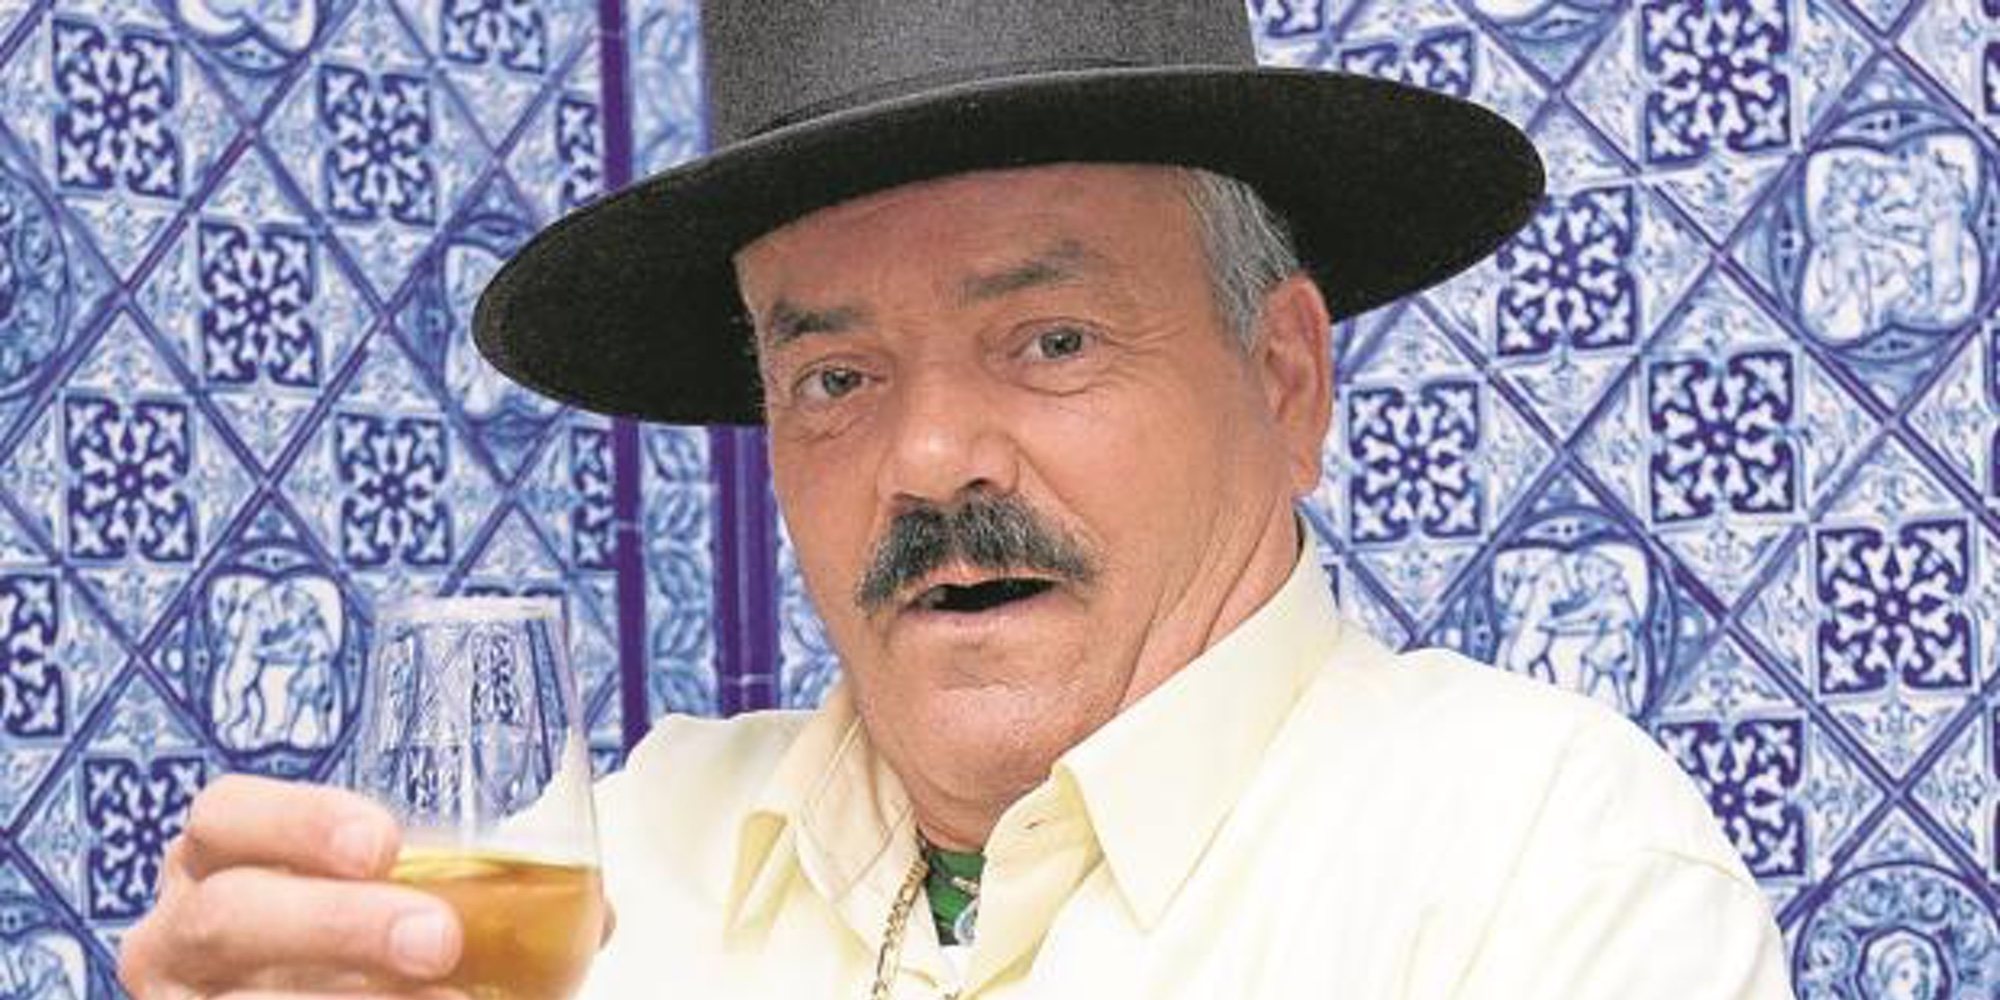 Muere el humorista Juan Joya Borja, más conocido como 'El risitas', a los 65 años